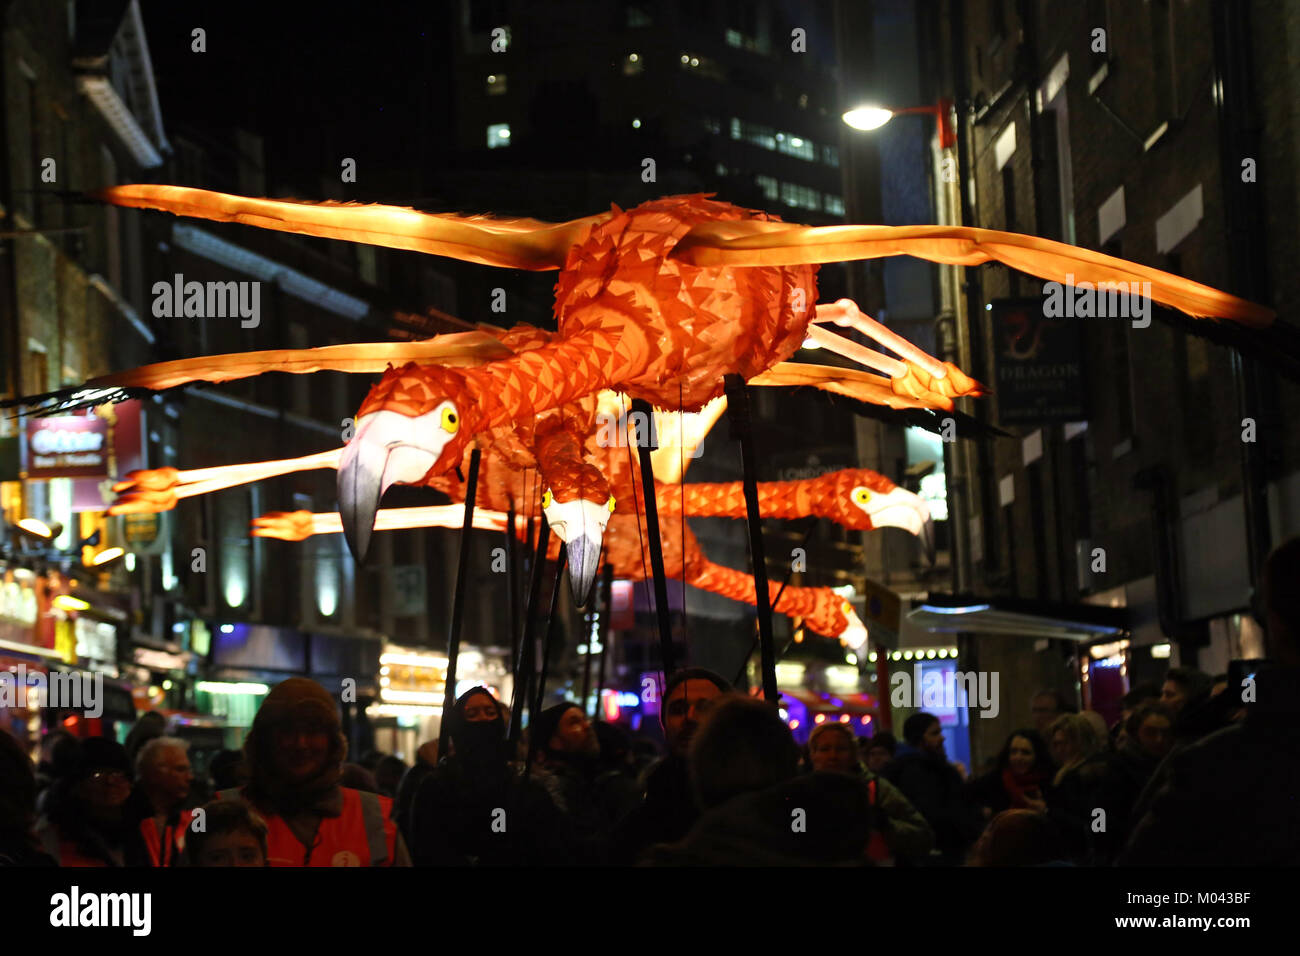 Londres, Royaume-Uni. 18 janvier, 2018. Par voie de Flamingo Company lanterne dans le quartier chinois dans le cadre de la Lumière Lumière Londres Festival à Londres Crédit : Paul Brown/Alamy Live News Banque D'Images